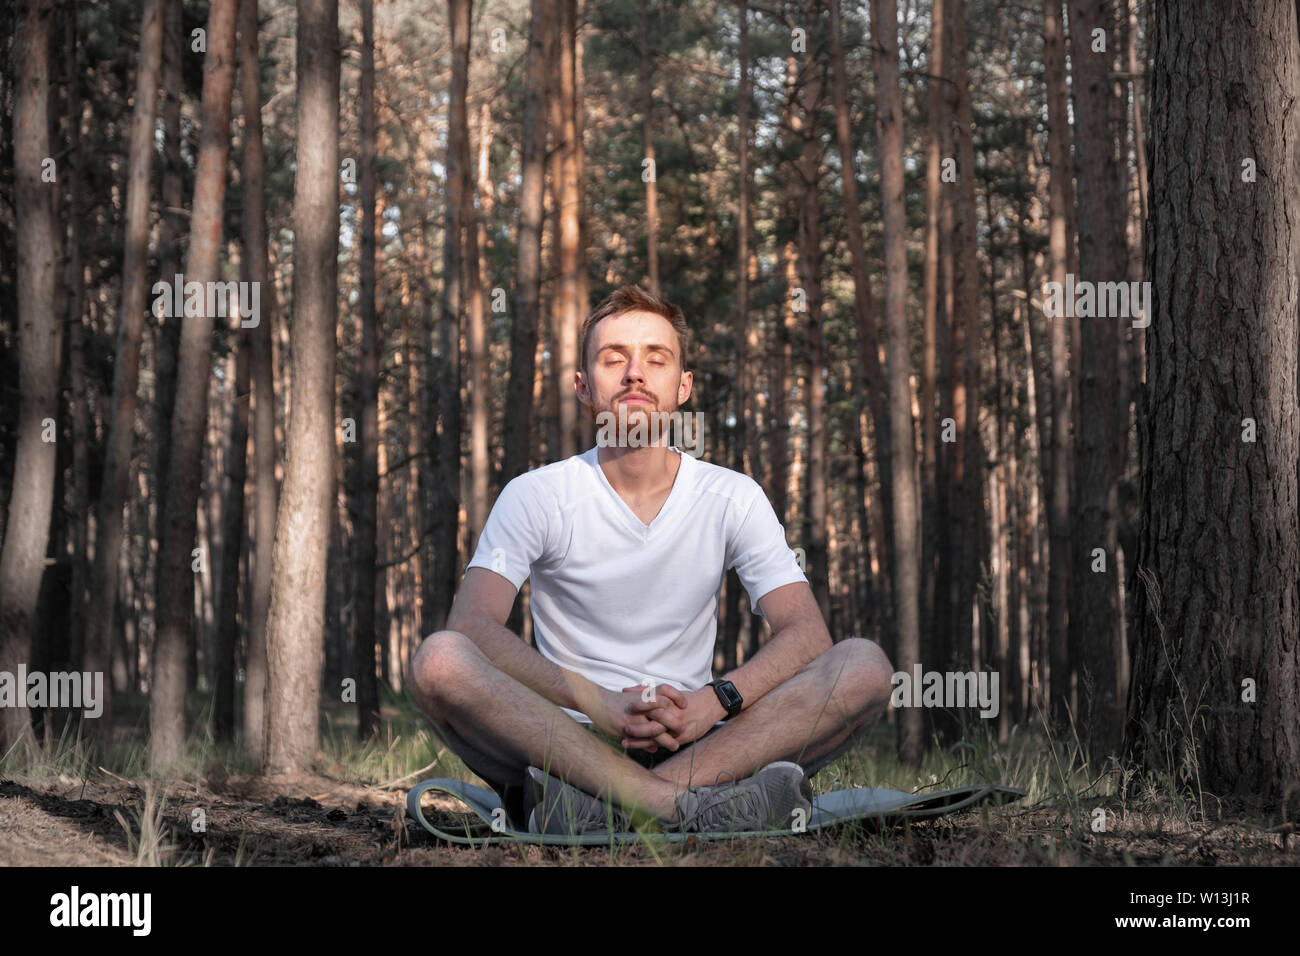 Giovane maschio persona meditando nella foresta. L uomo moderno si trova nei boschi di pino con gli occhi chiusi e si gode il silenzio della natura Foto Stock